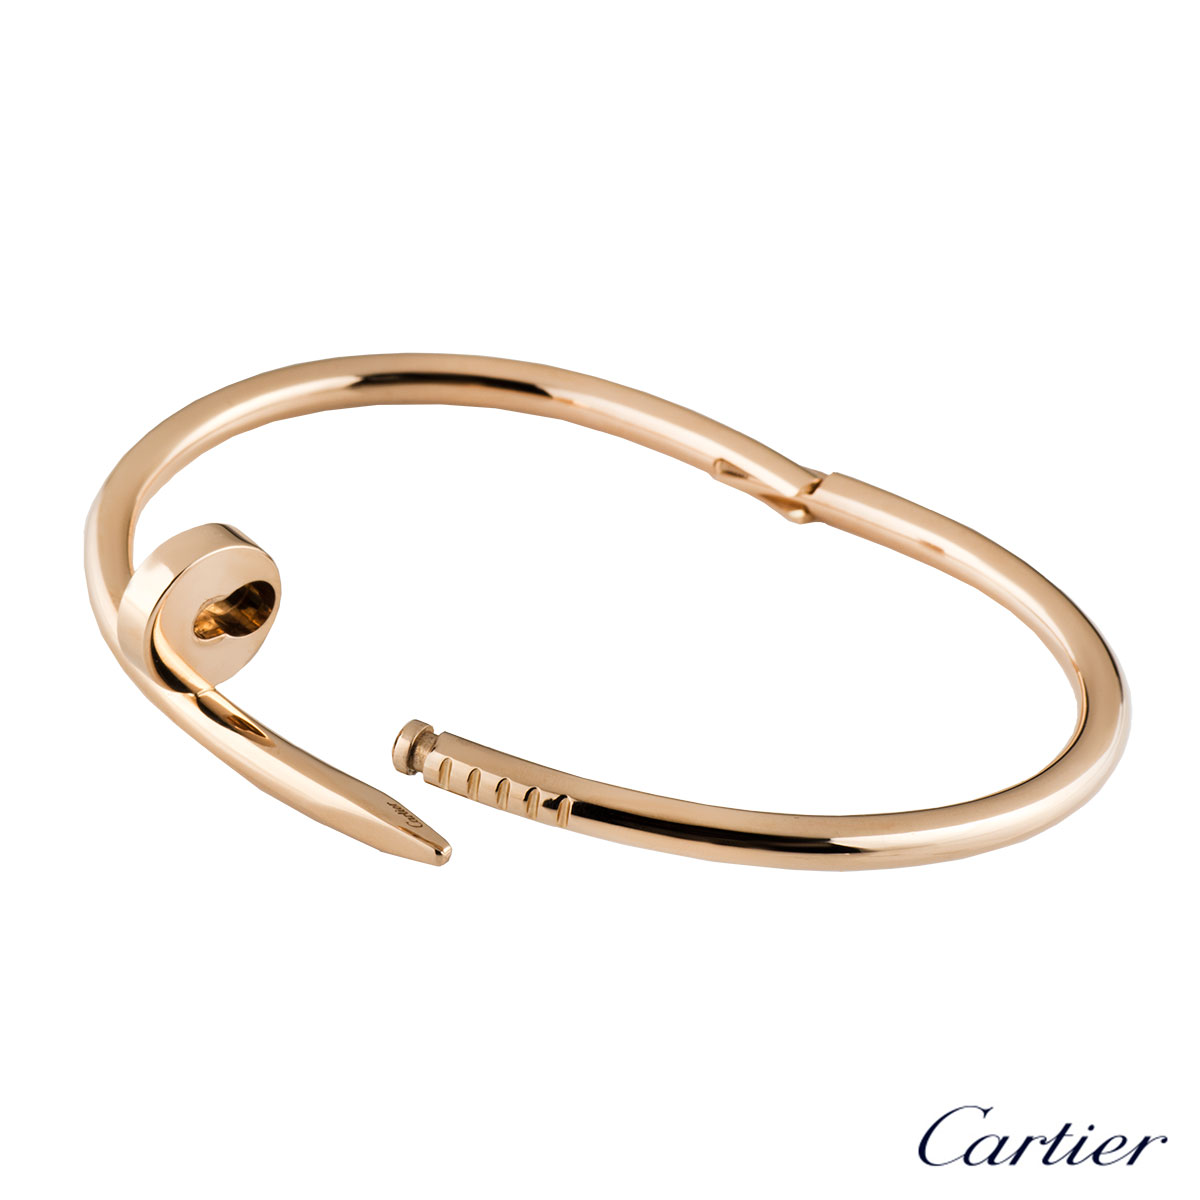 how to open cartier clou bracelet